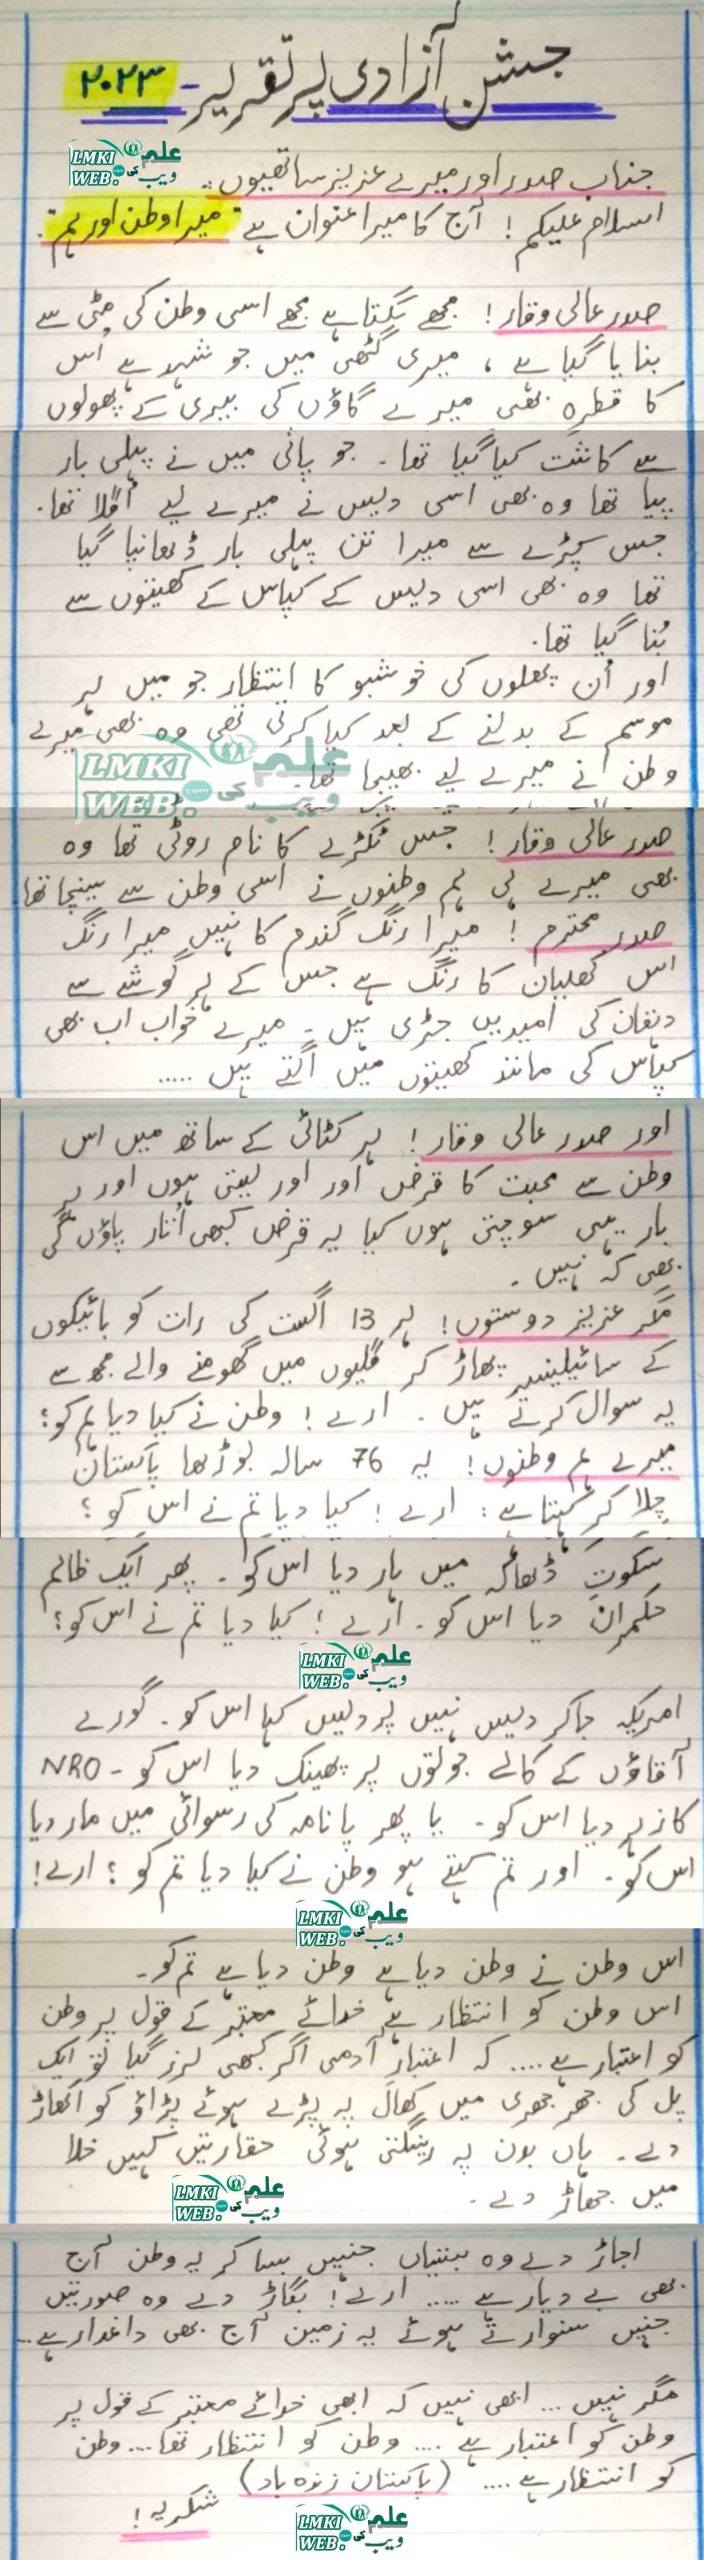 written speech on independence day in urdu